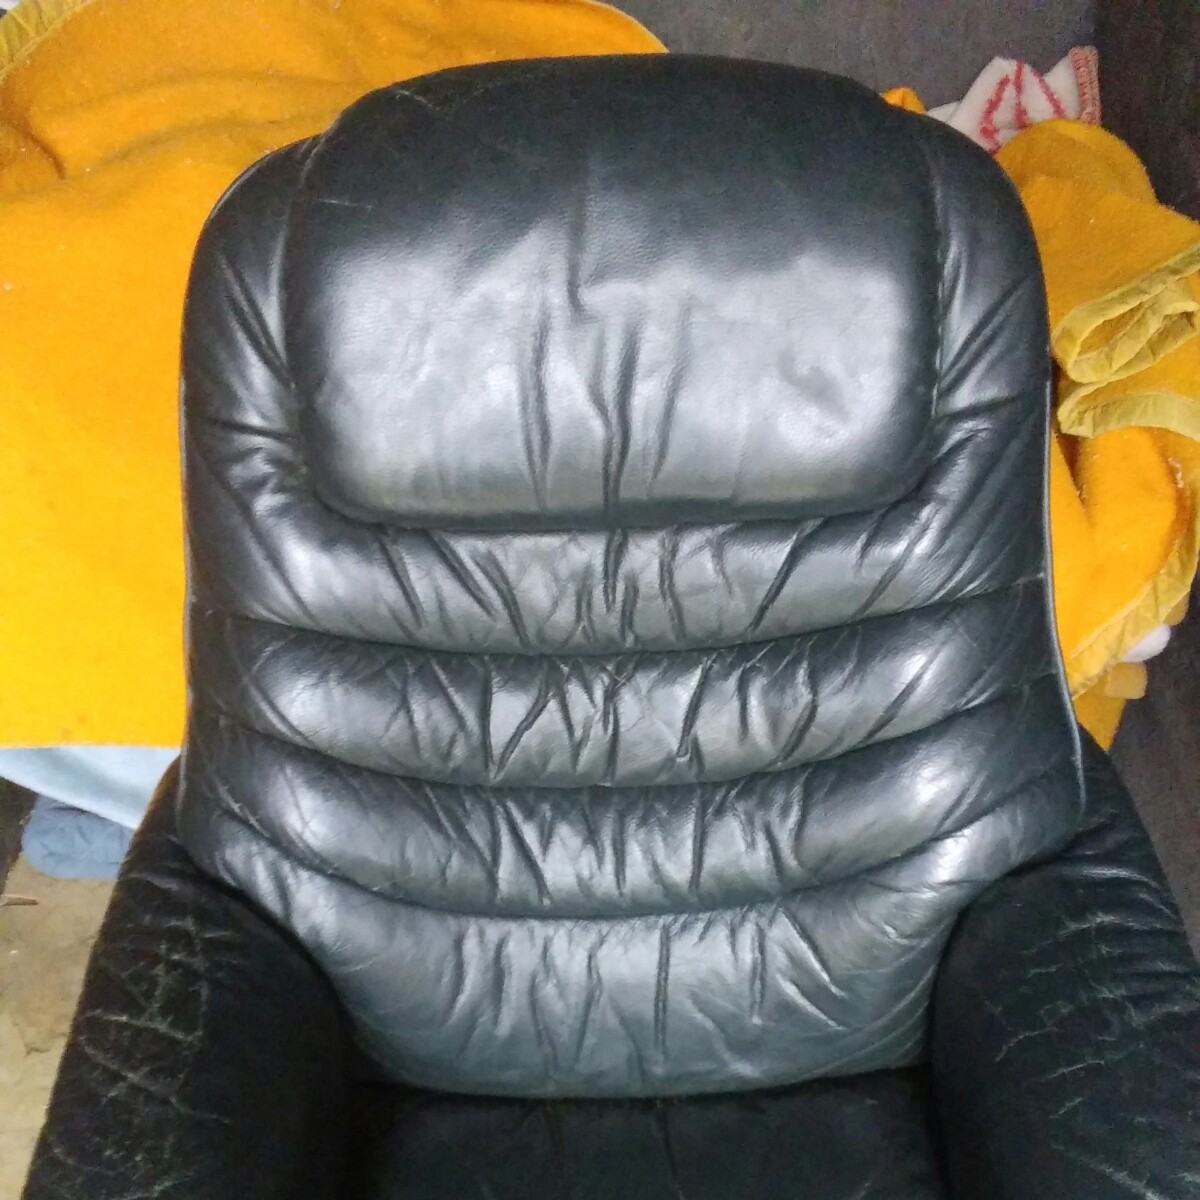  reclining arm chair -[312]